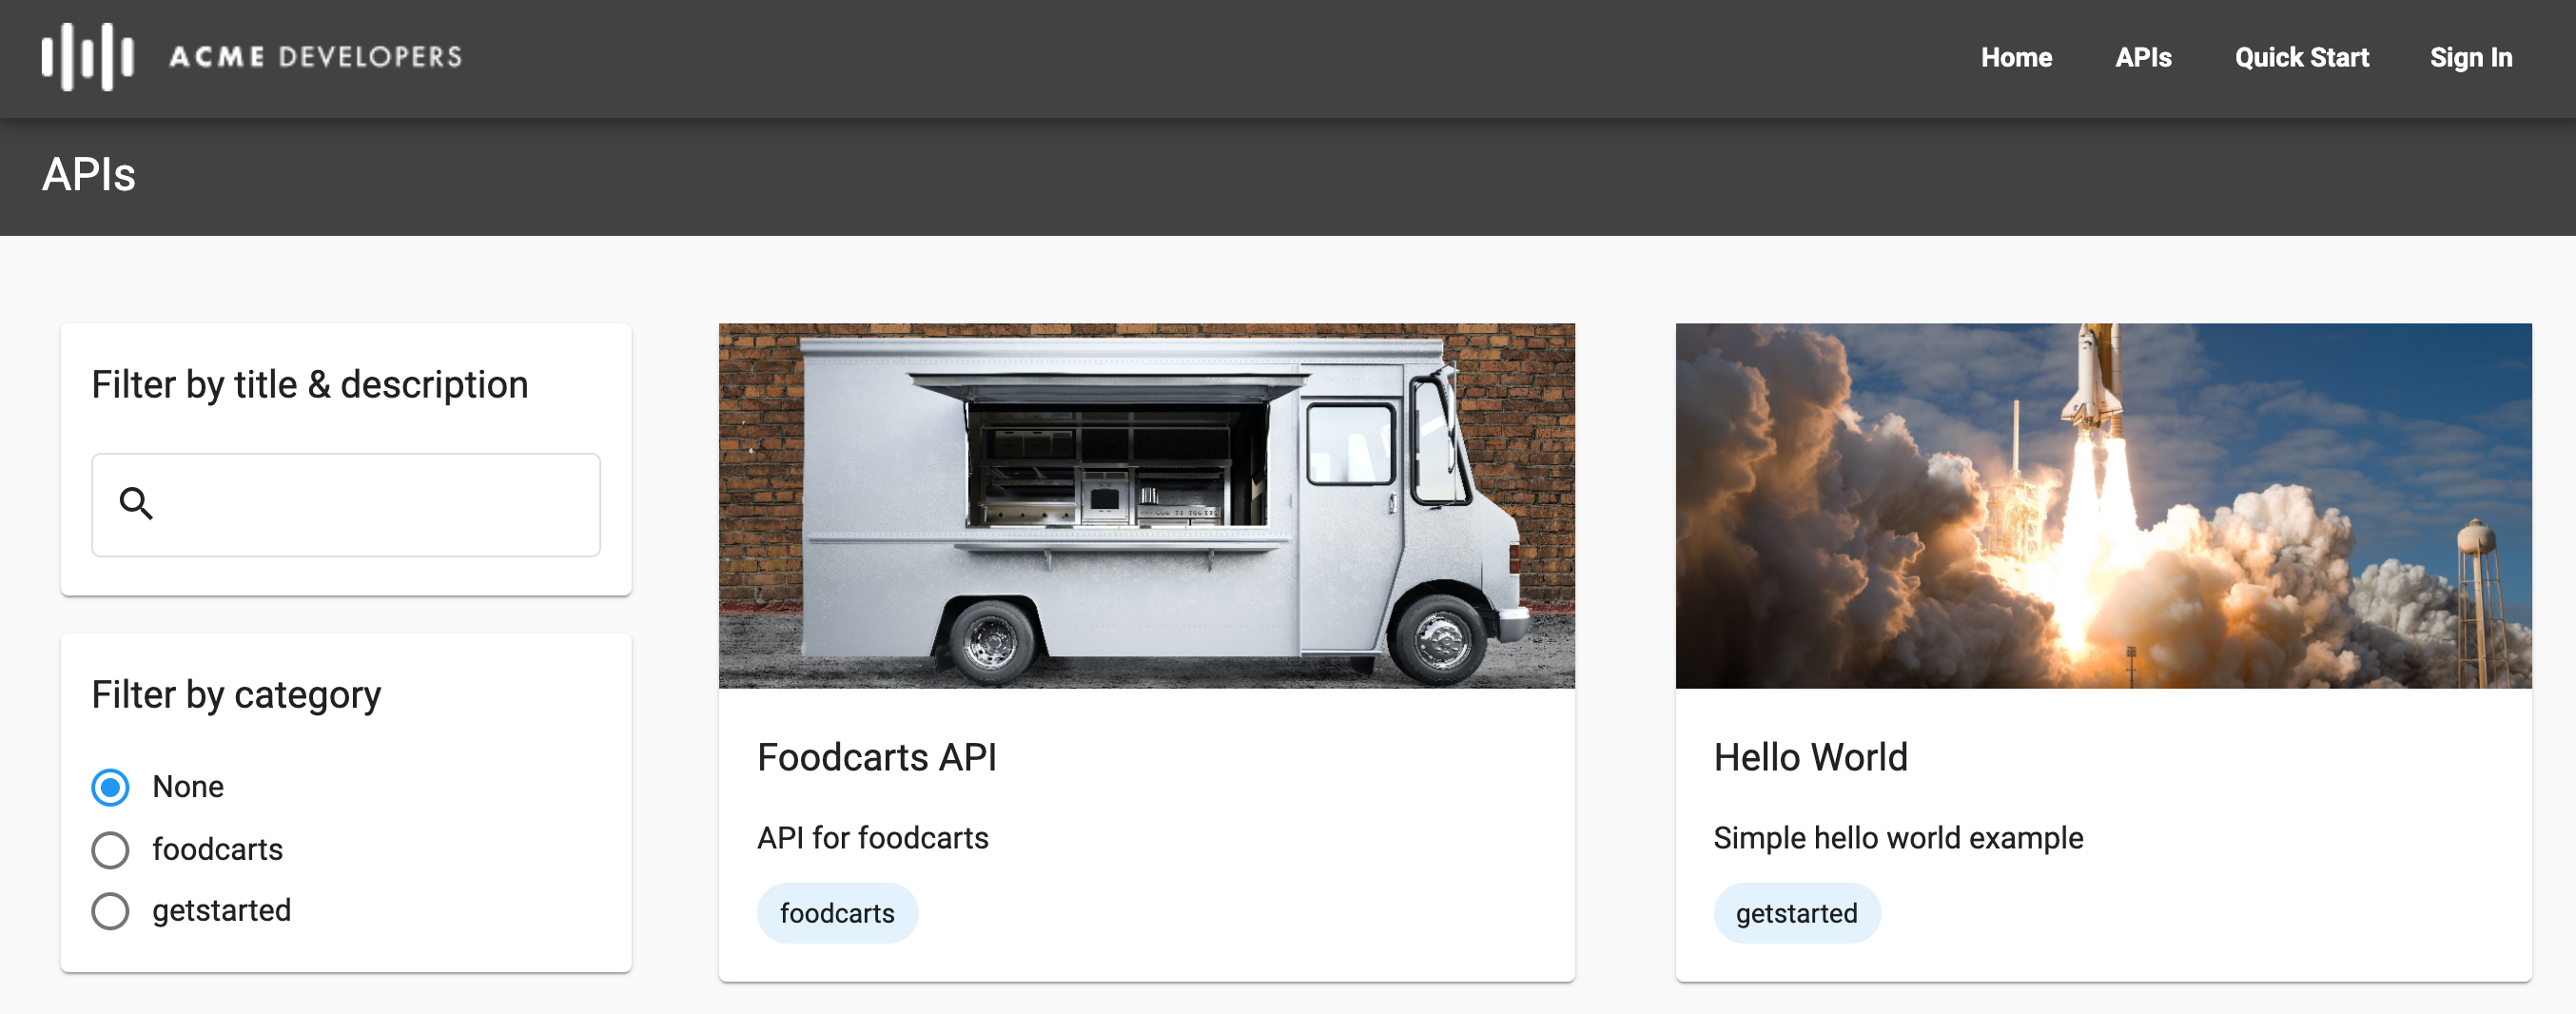 Trang API trong cổng trực tiếp hiển thị hai danh mục và việc sử dụng hình ảnh